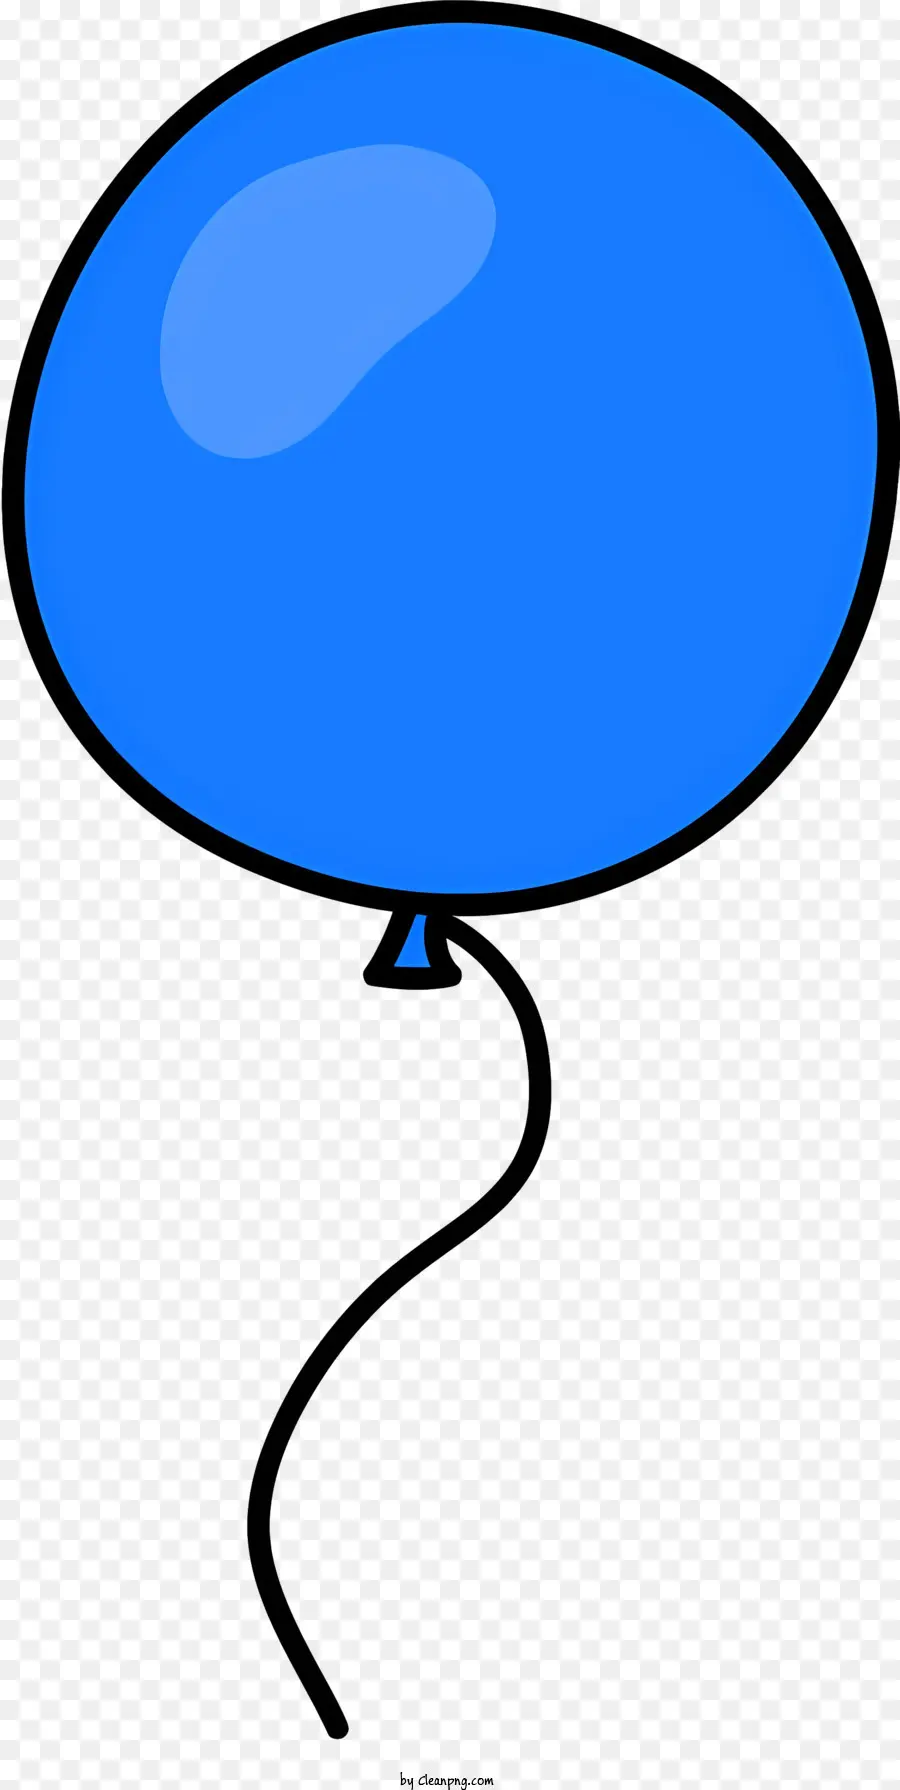 palloncino blu - Palloncino blu con nastro bianco che galleggia liberamente